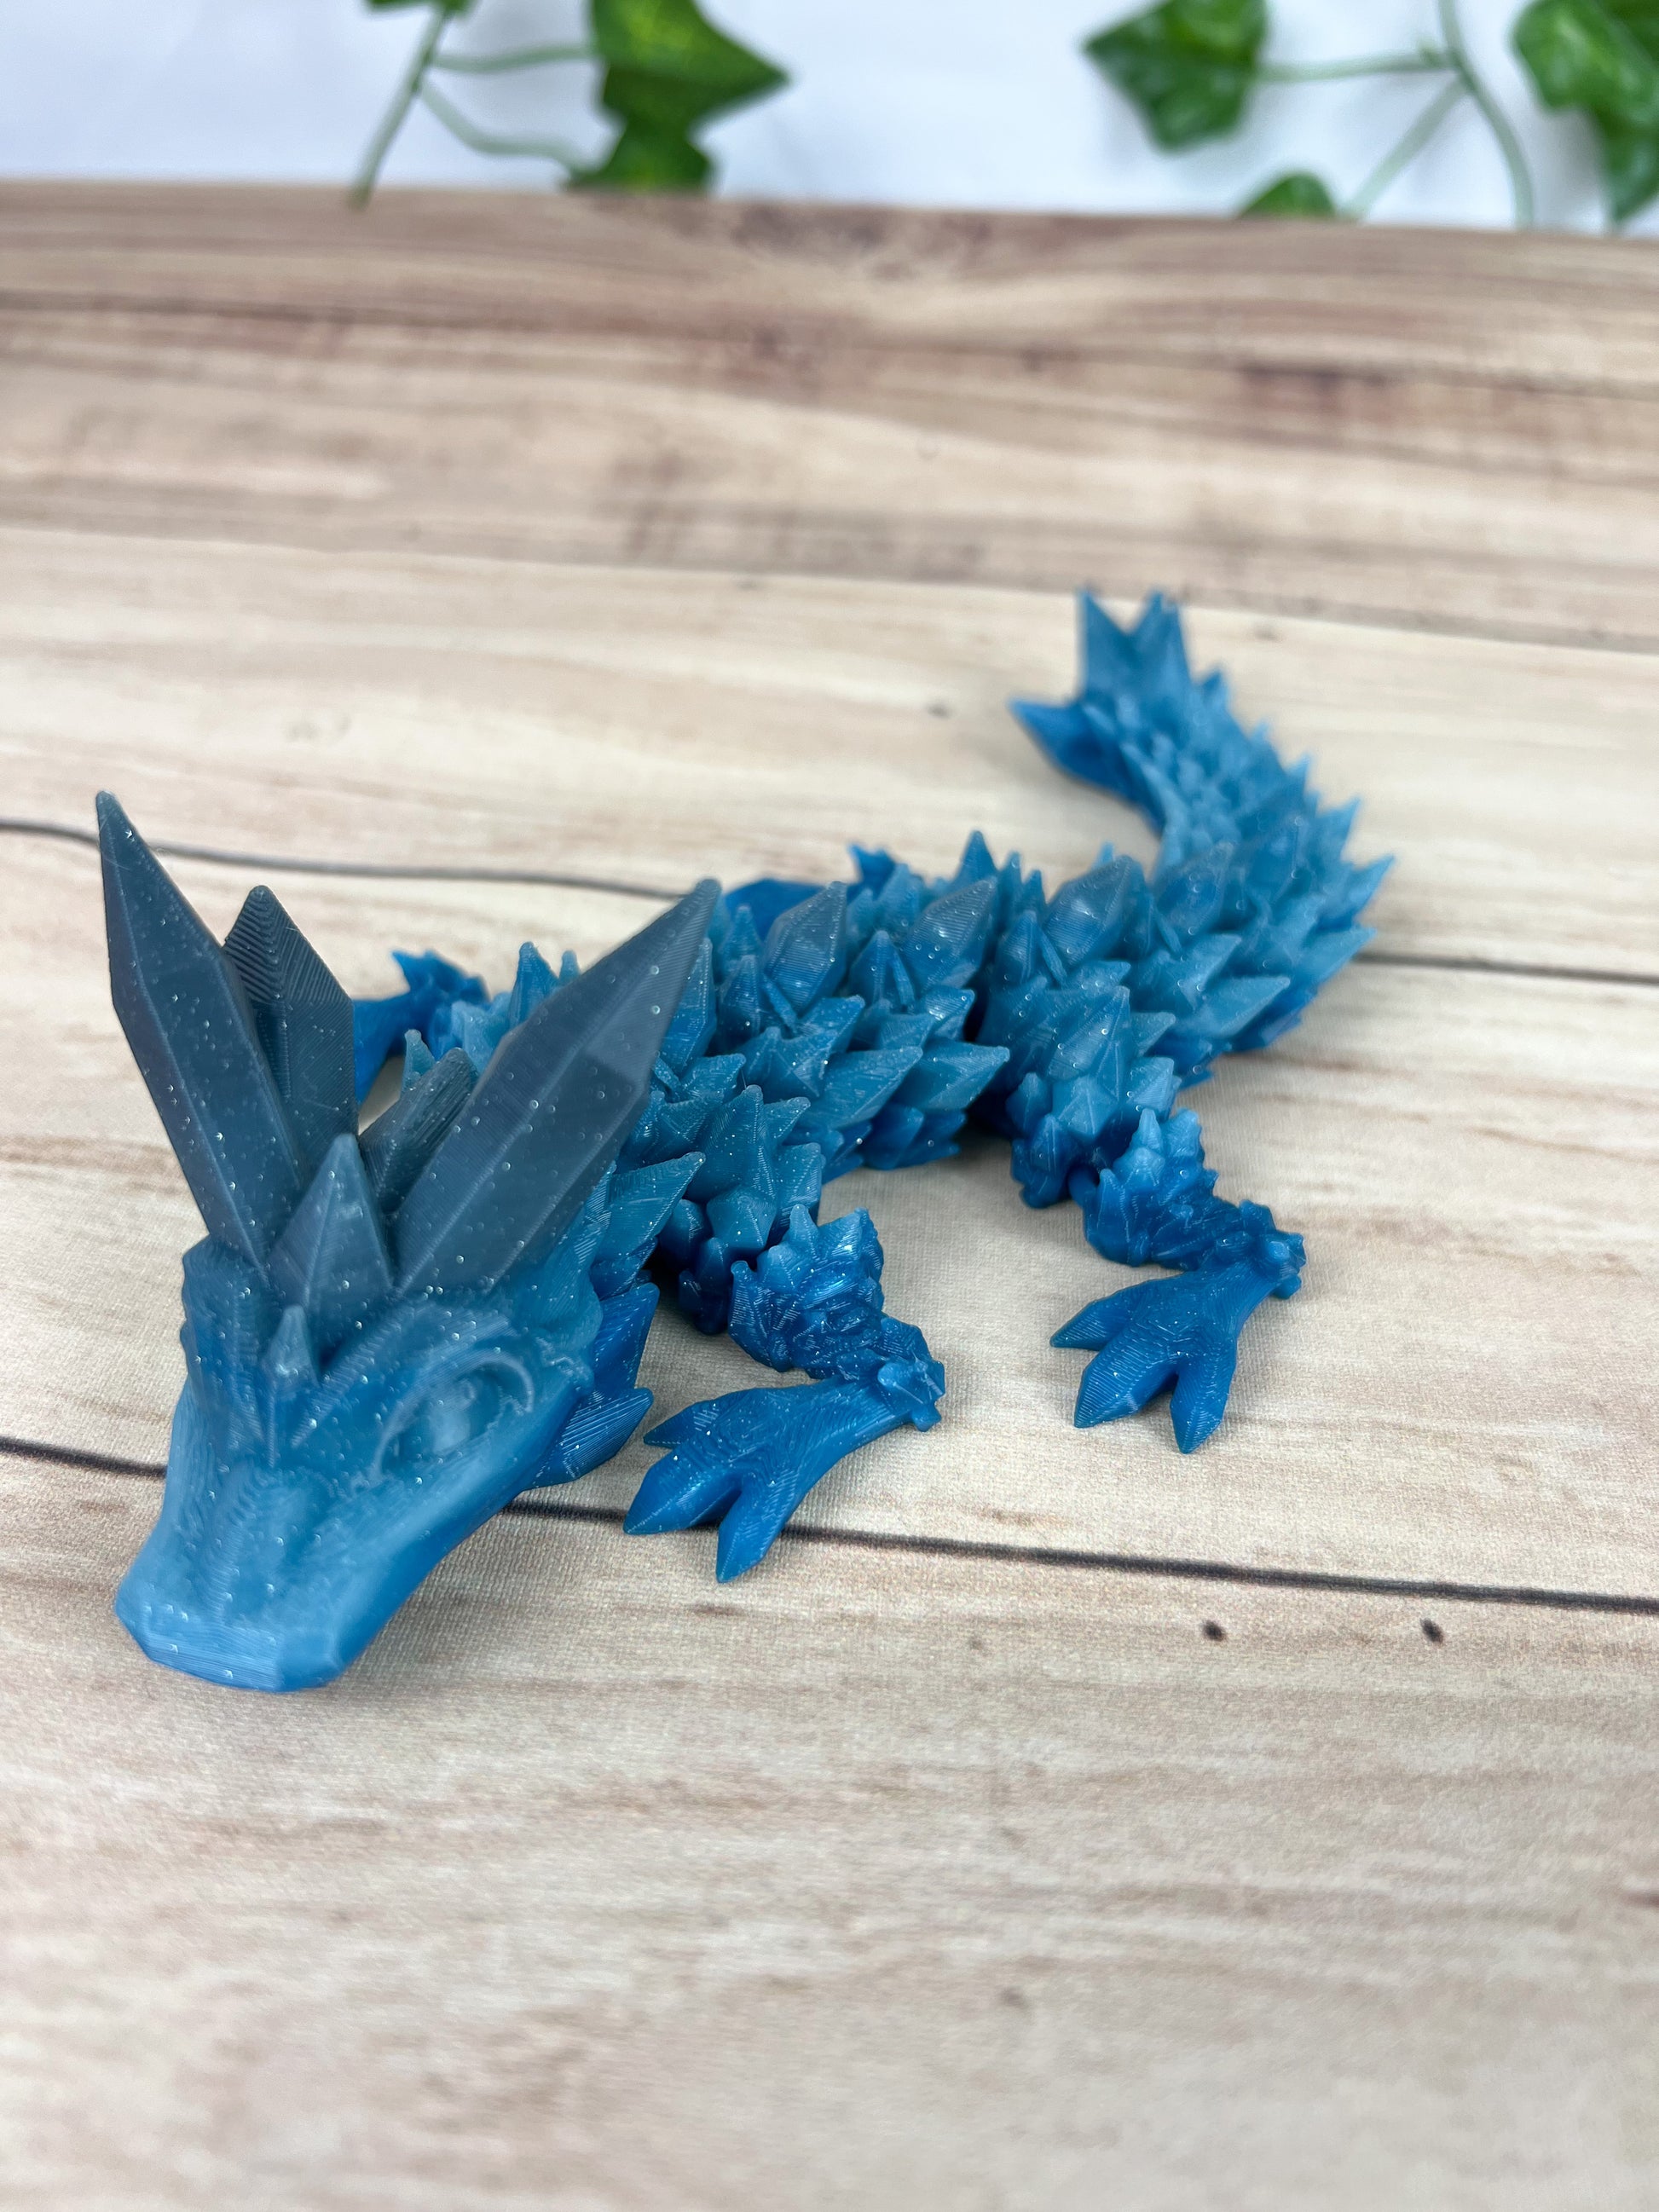  Crystal Dragon Fidget Toy - Articulated Crystal Dragon